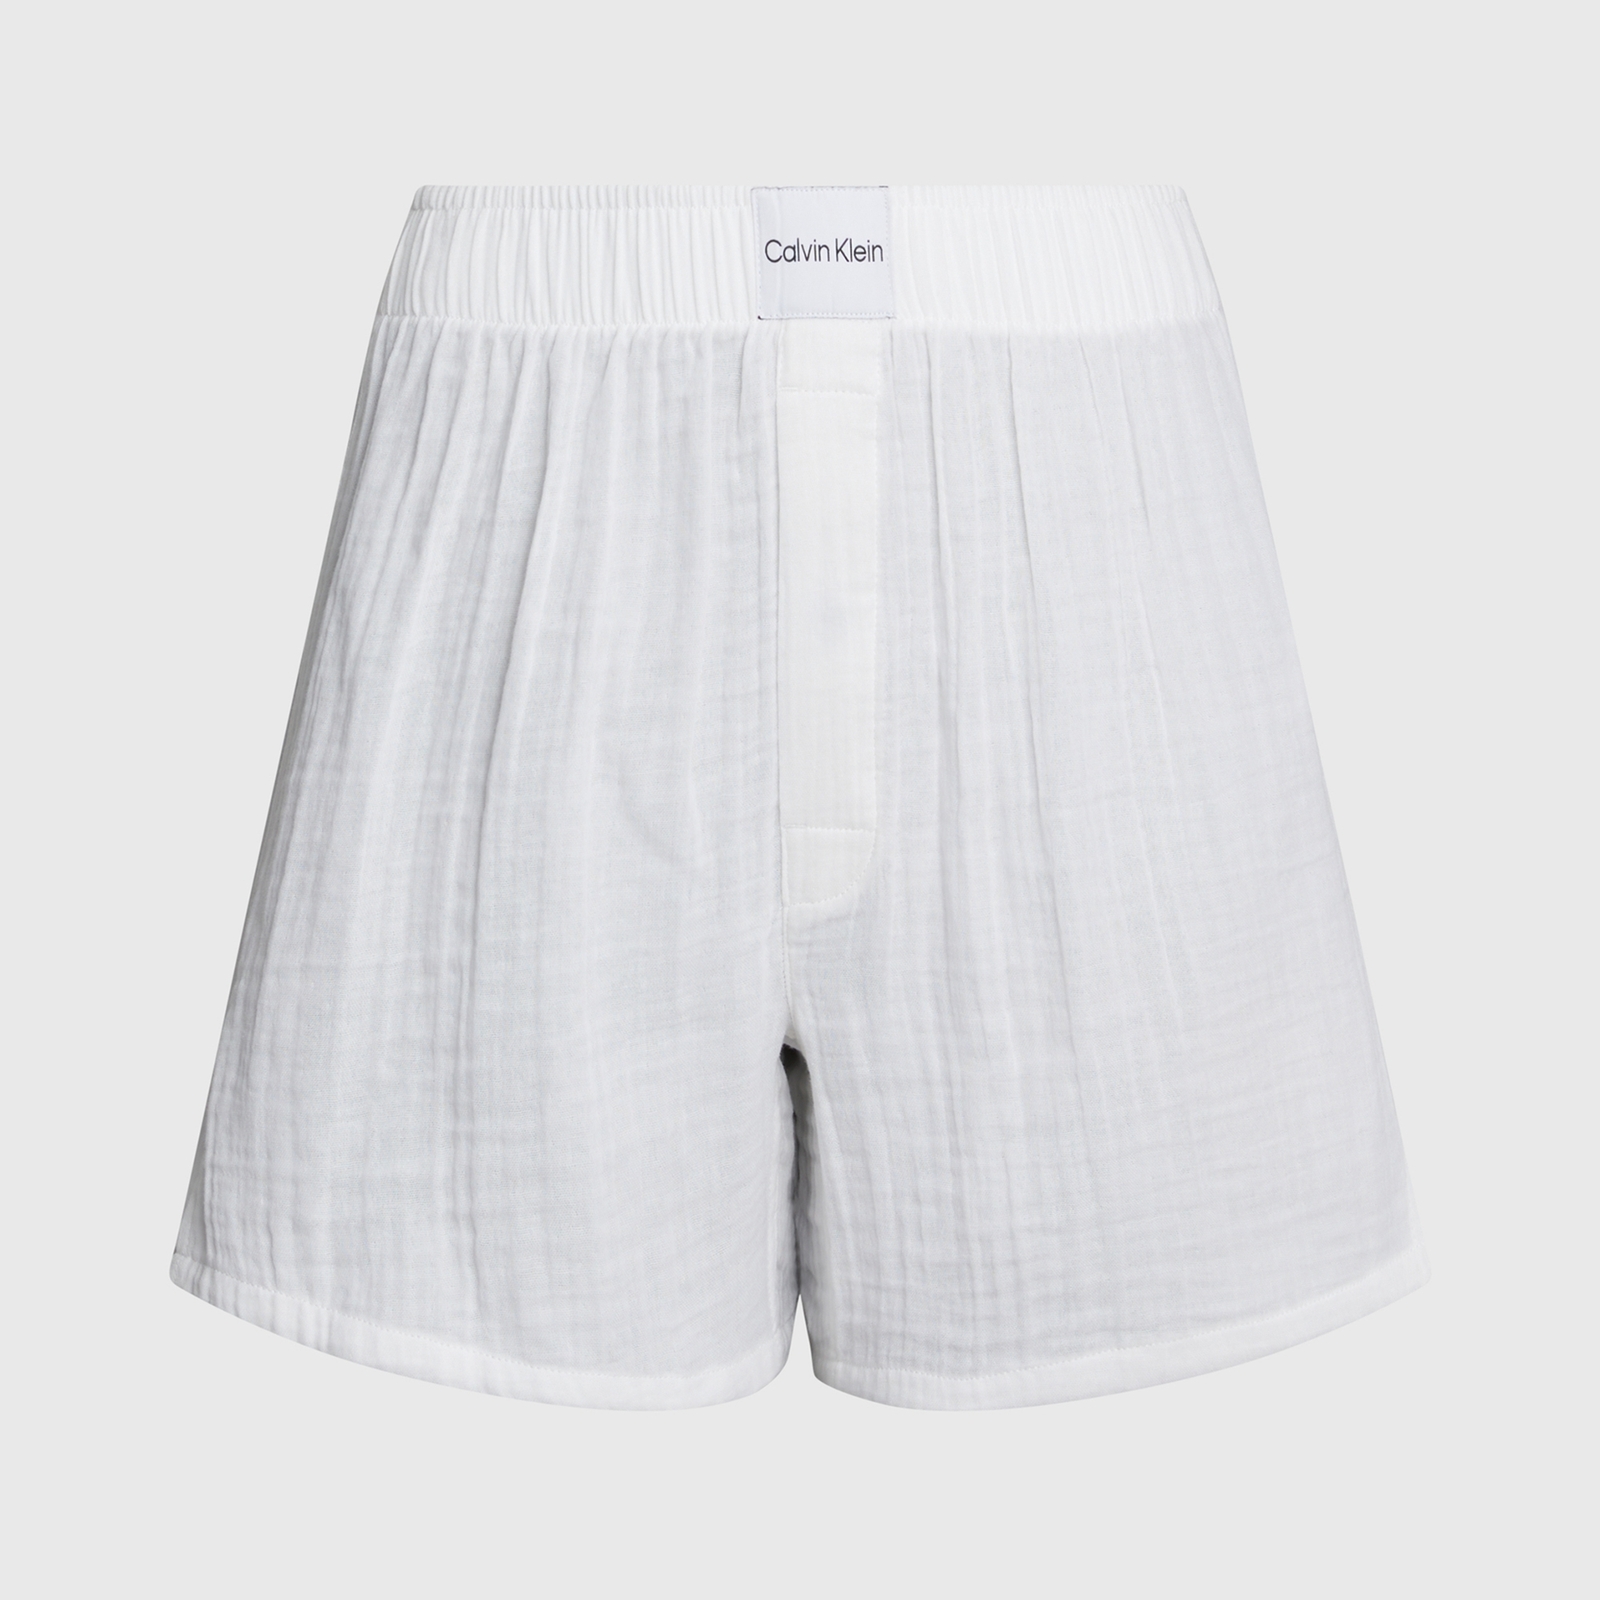 Calvin Klein Textured Cotton Boxer Shorts - M von Calvin Klein